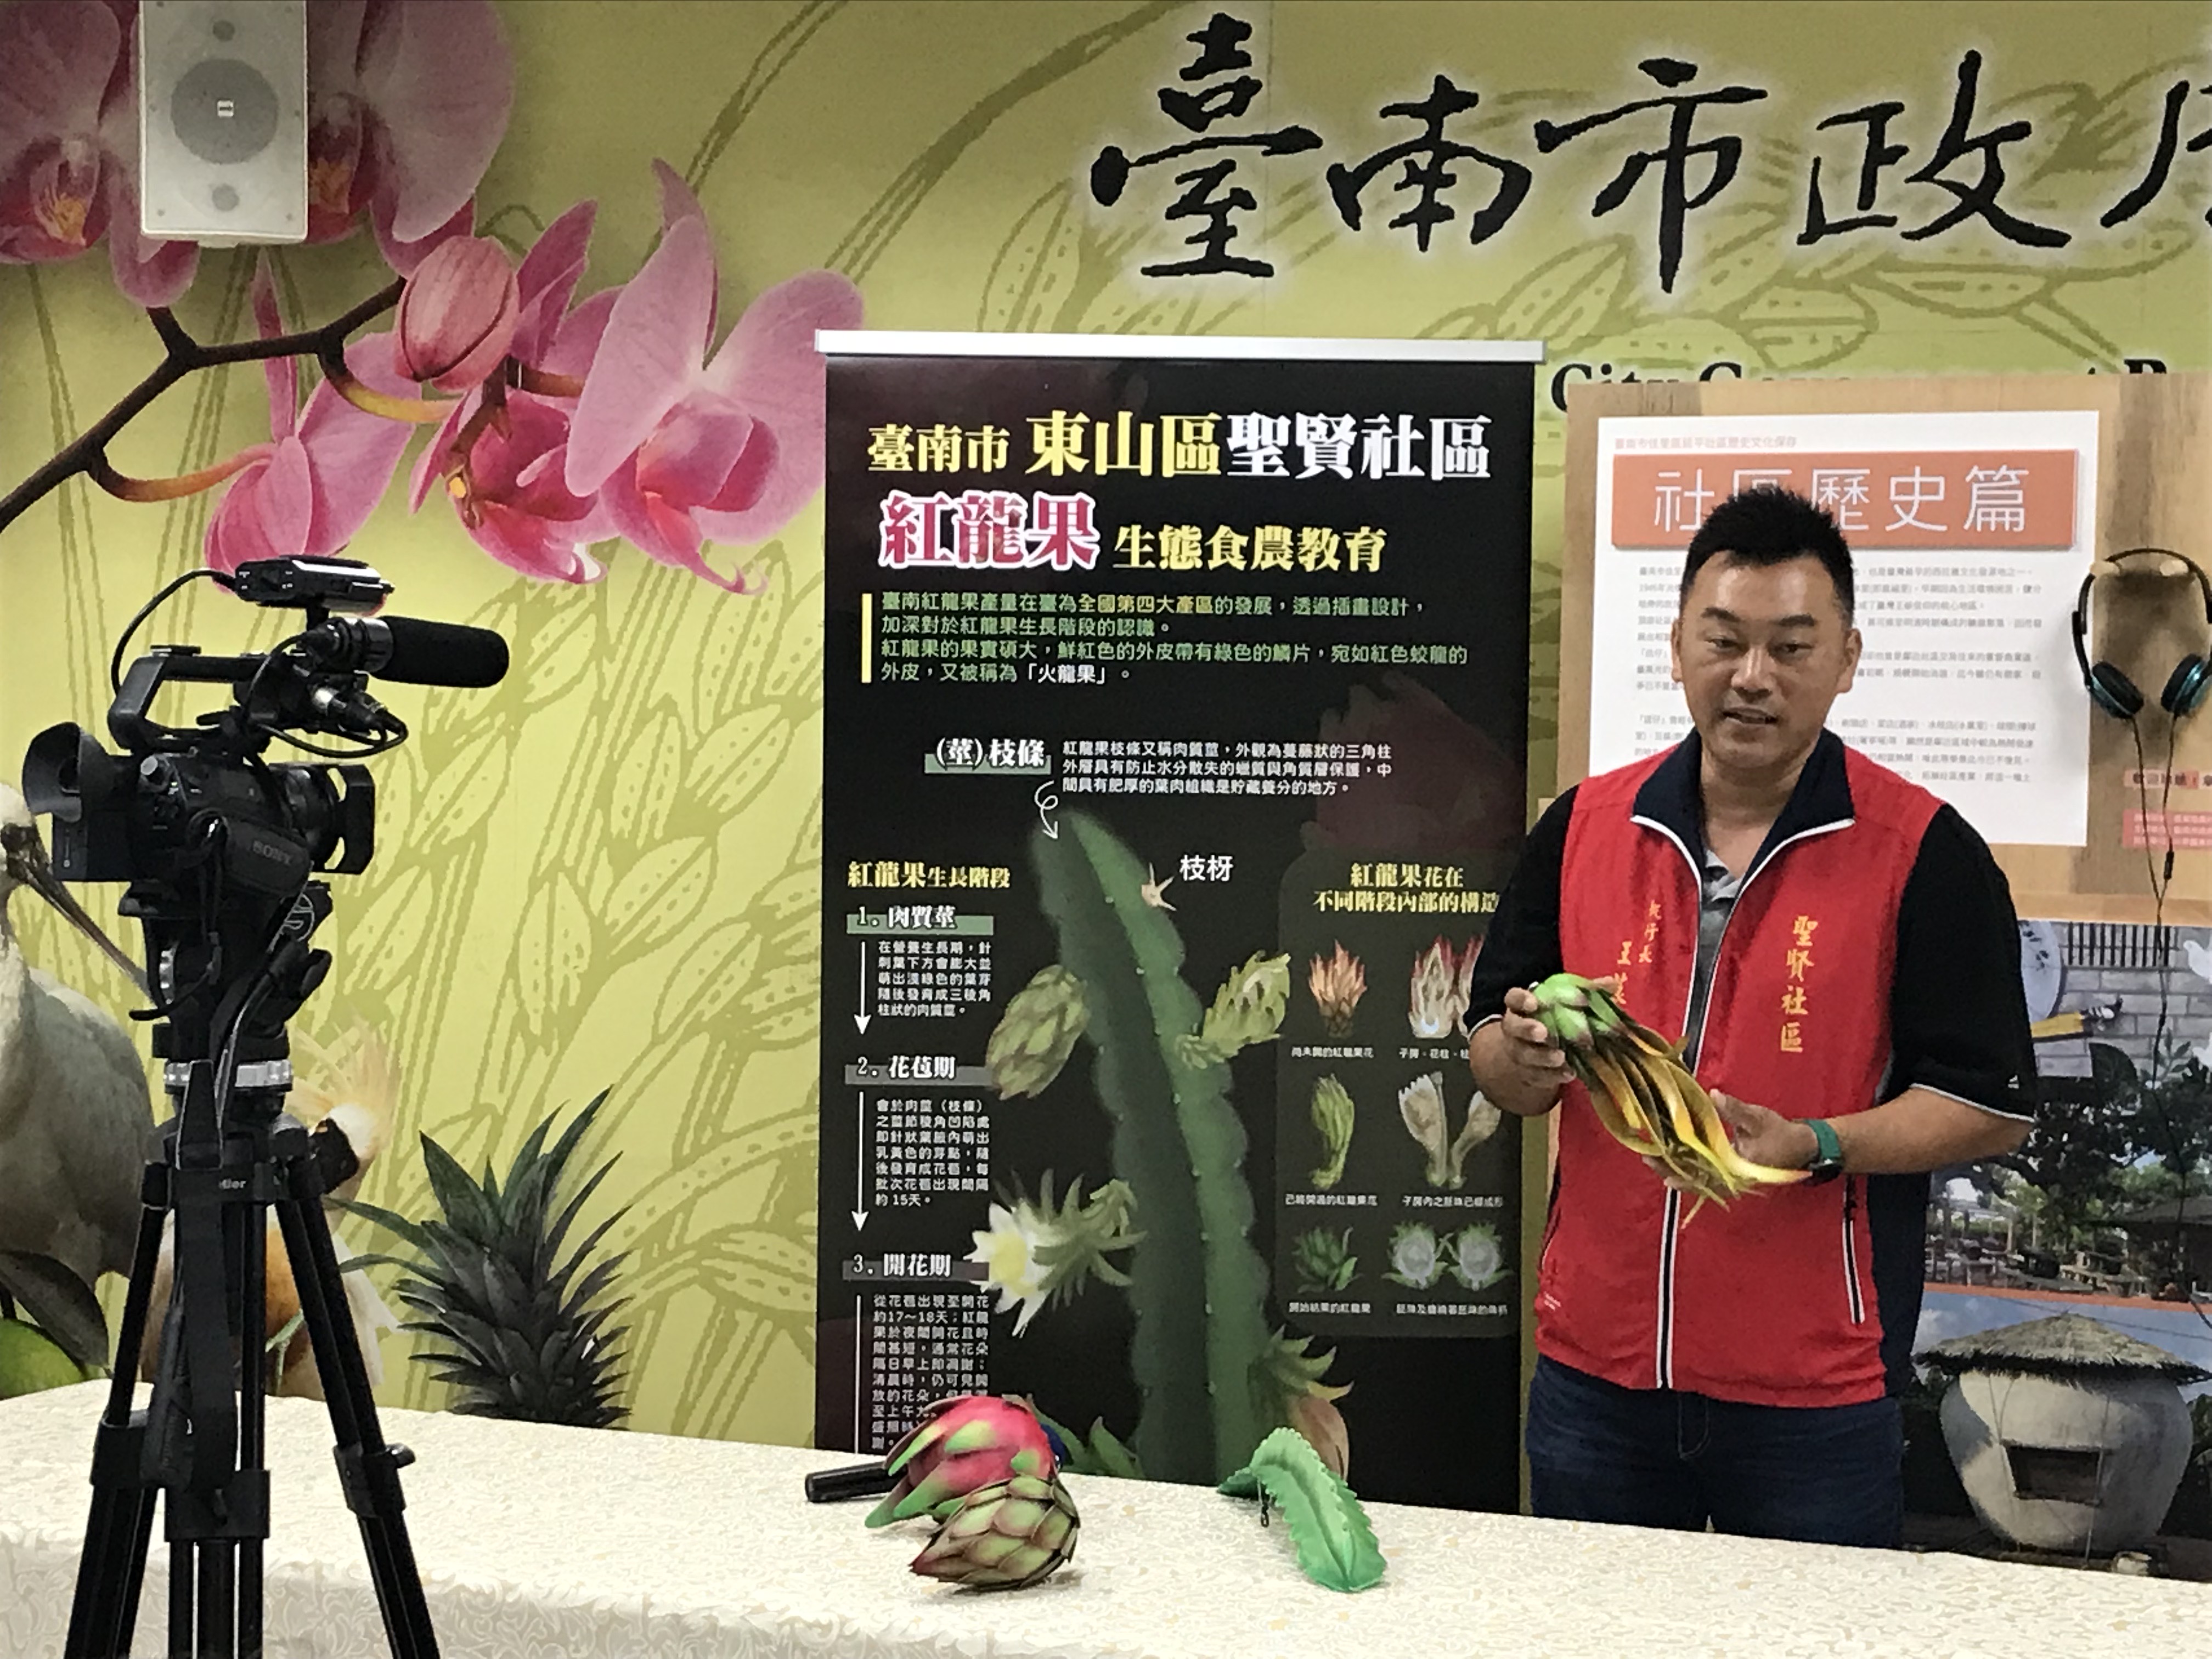 動手玩教具 體驗臺南市食農教育新教案